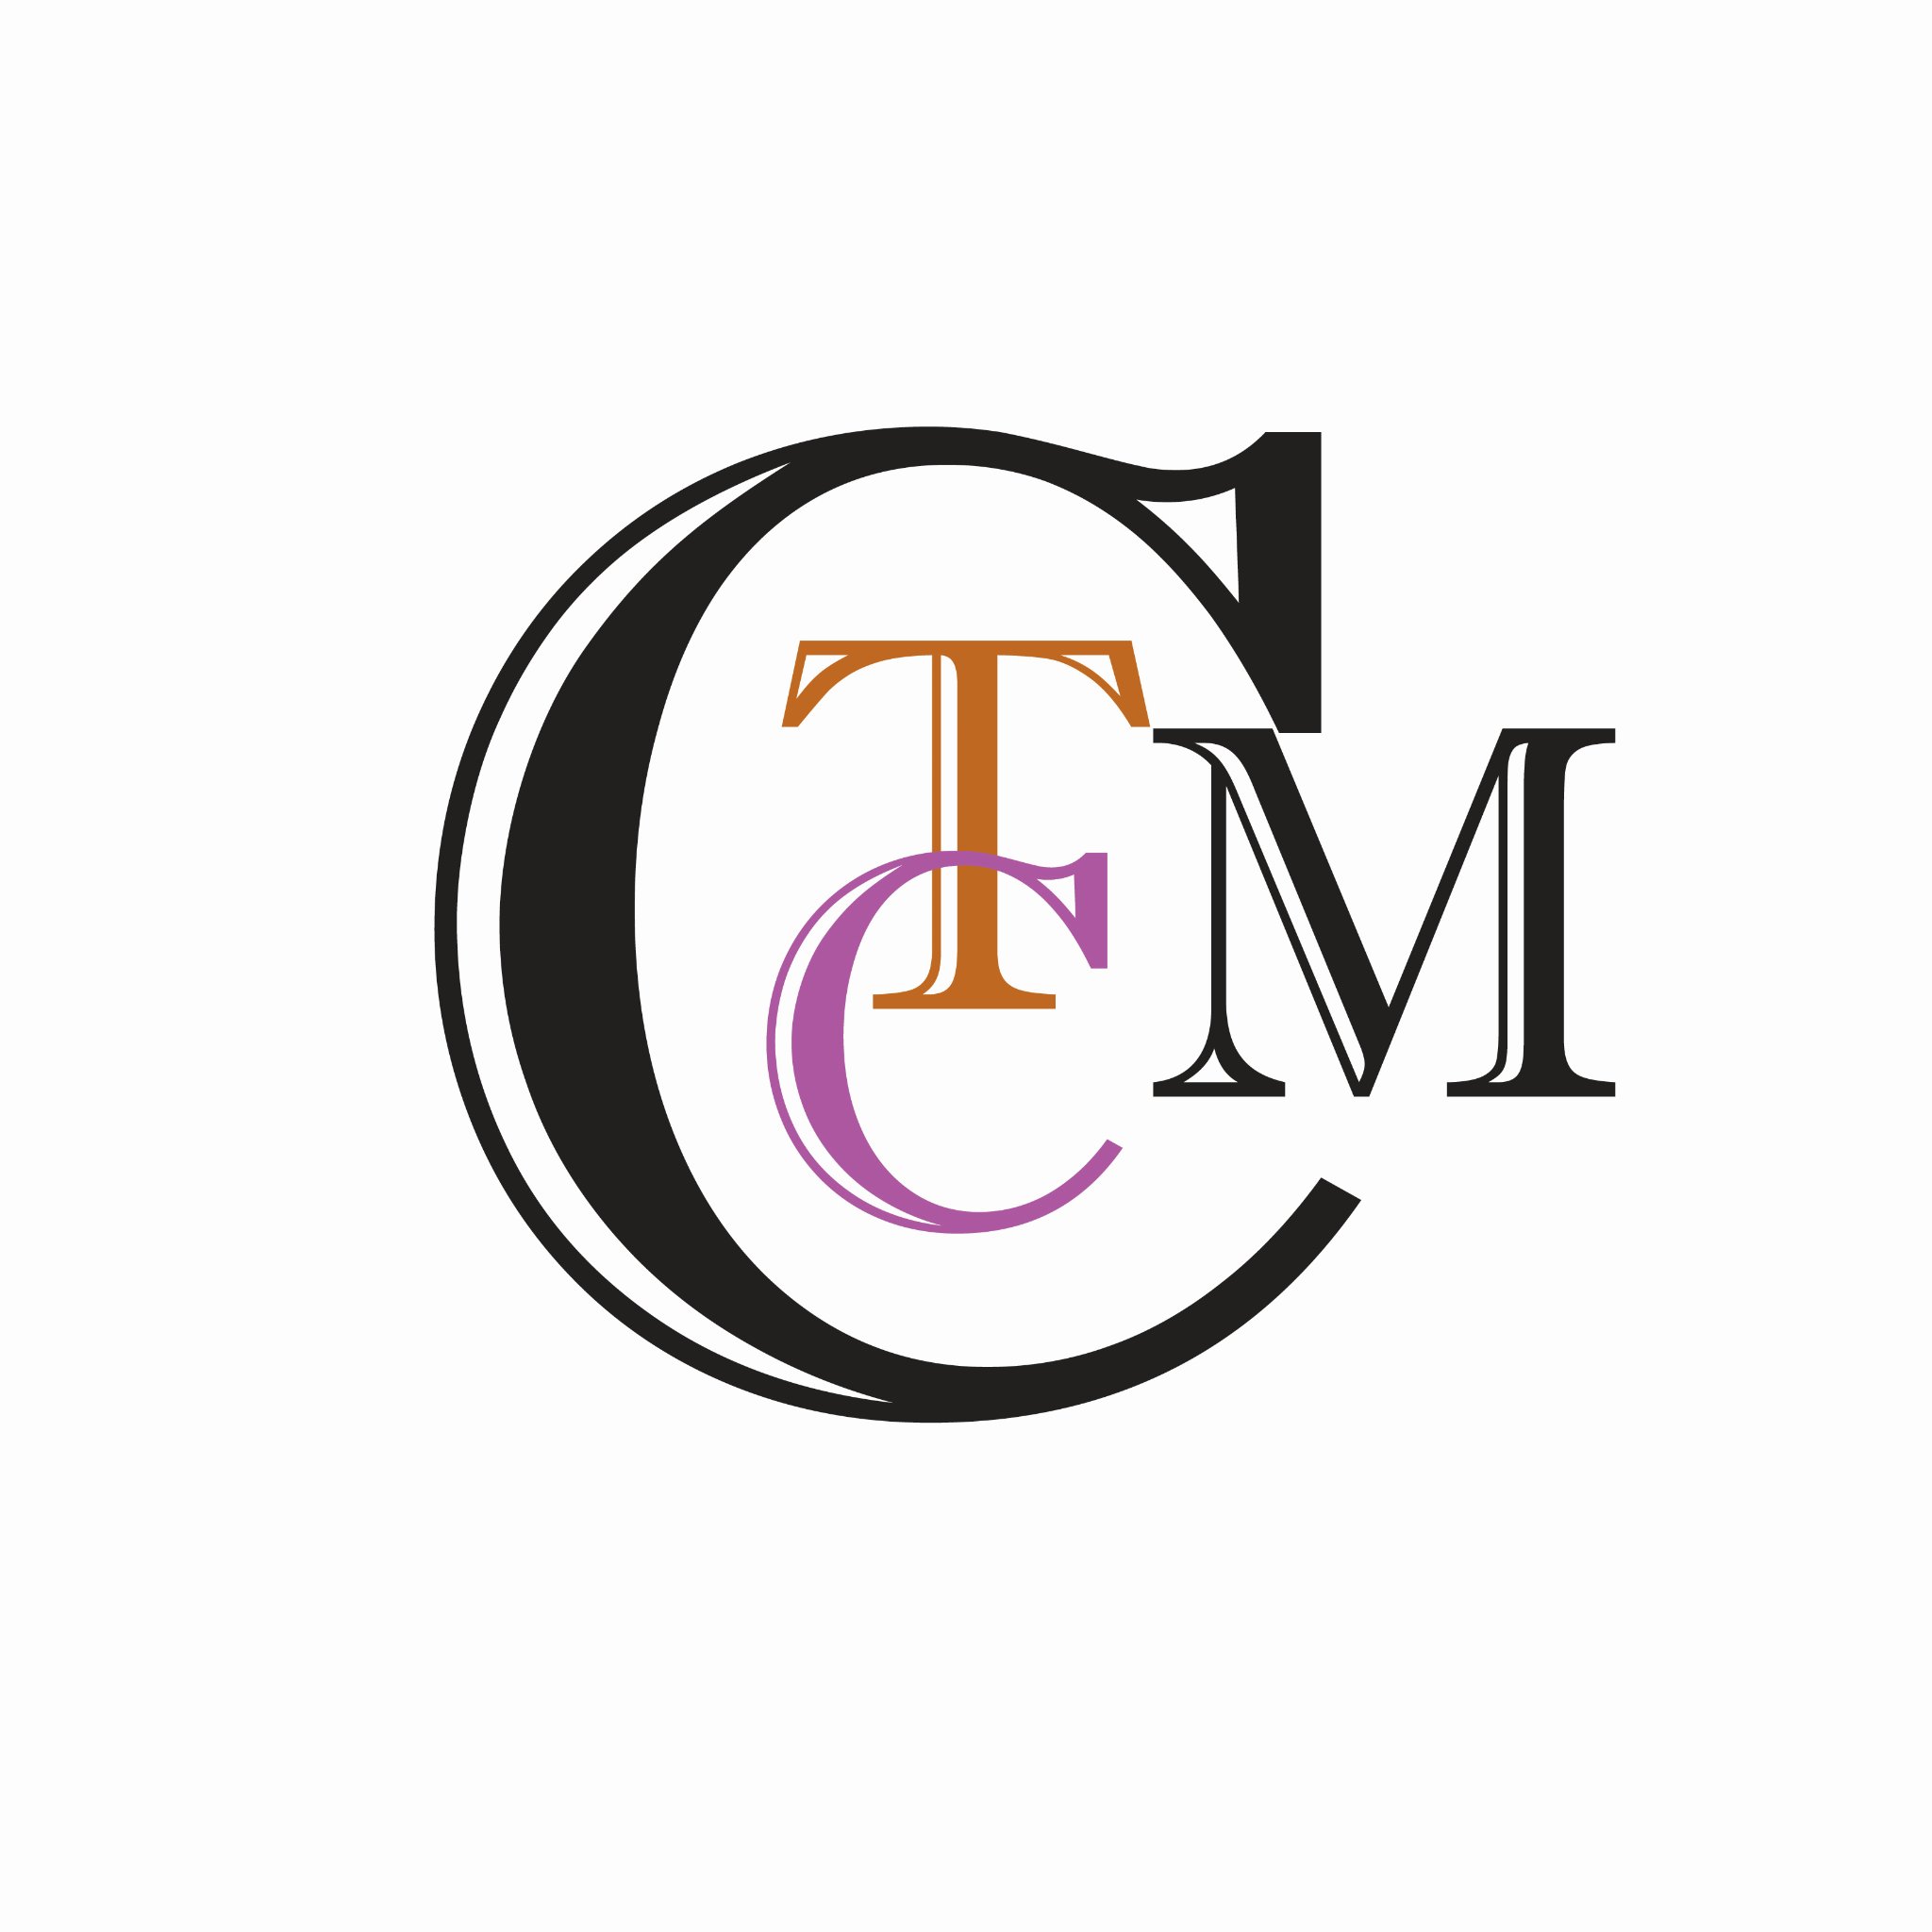 TCM Communications